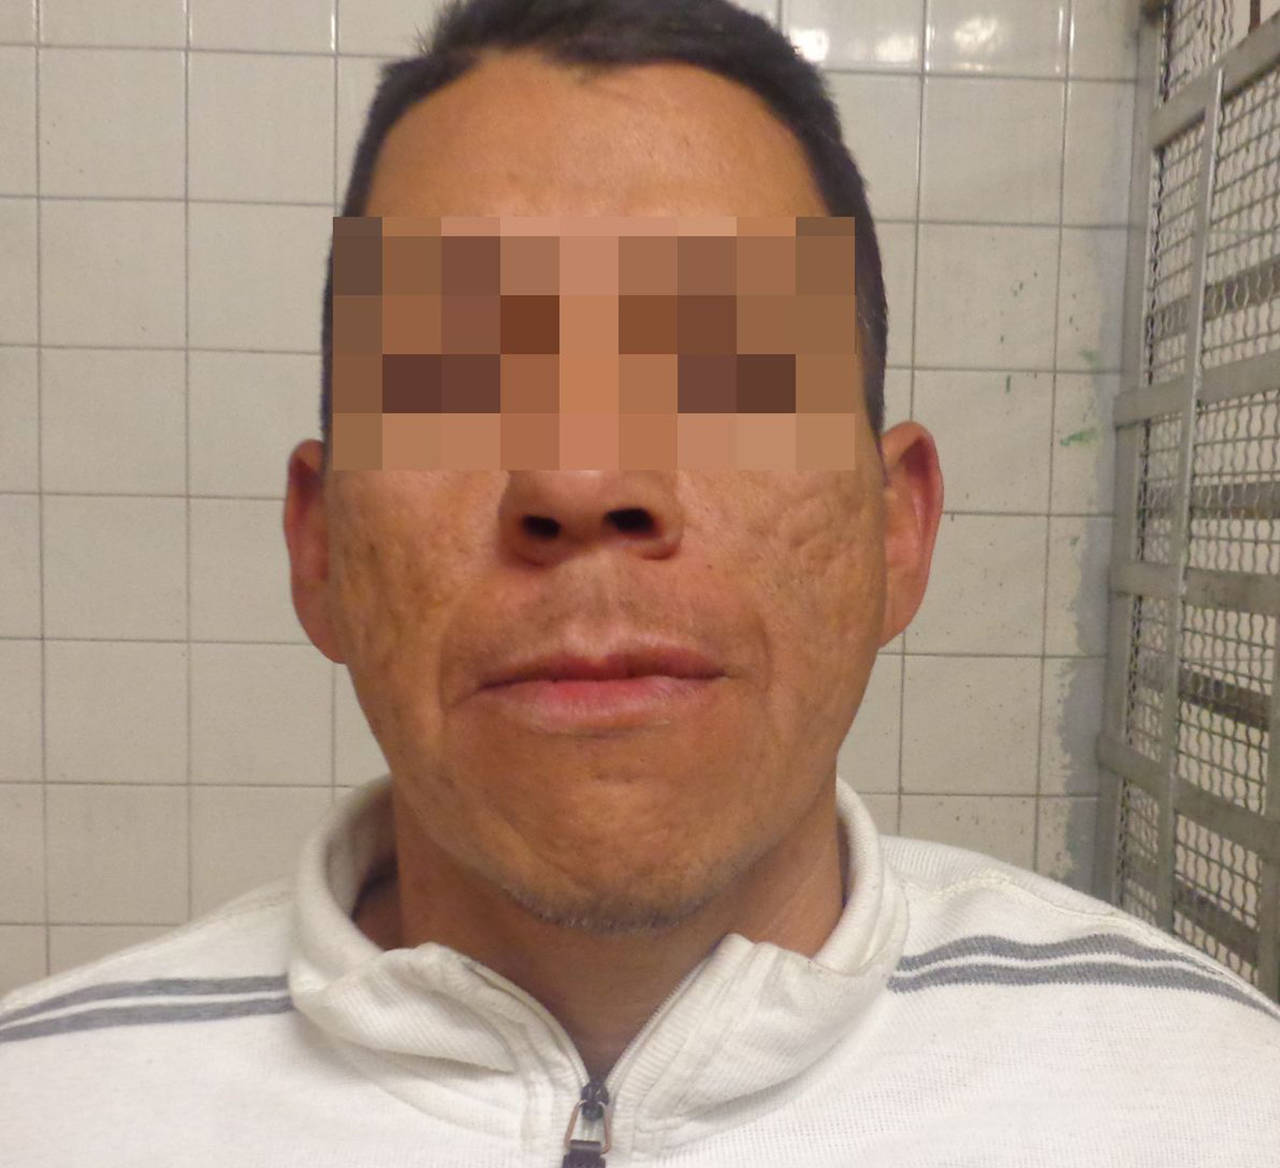 Delito. La Policía de Torreón detuvo a un sujeto acusado de robo en una institución de salud.